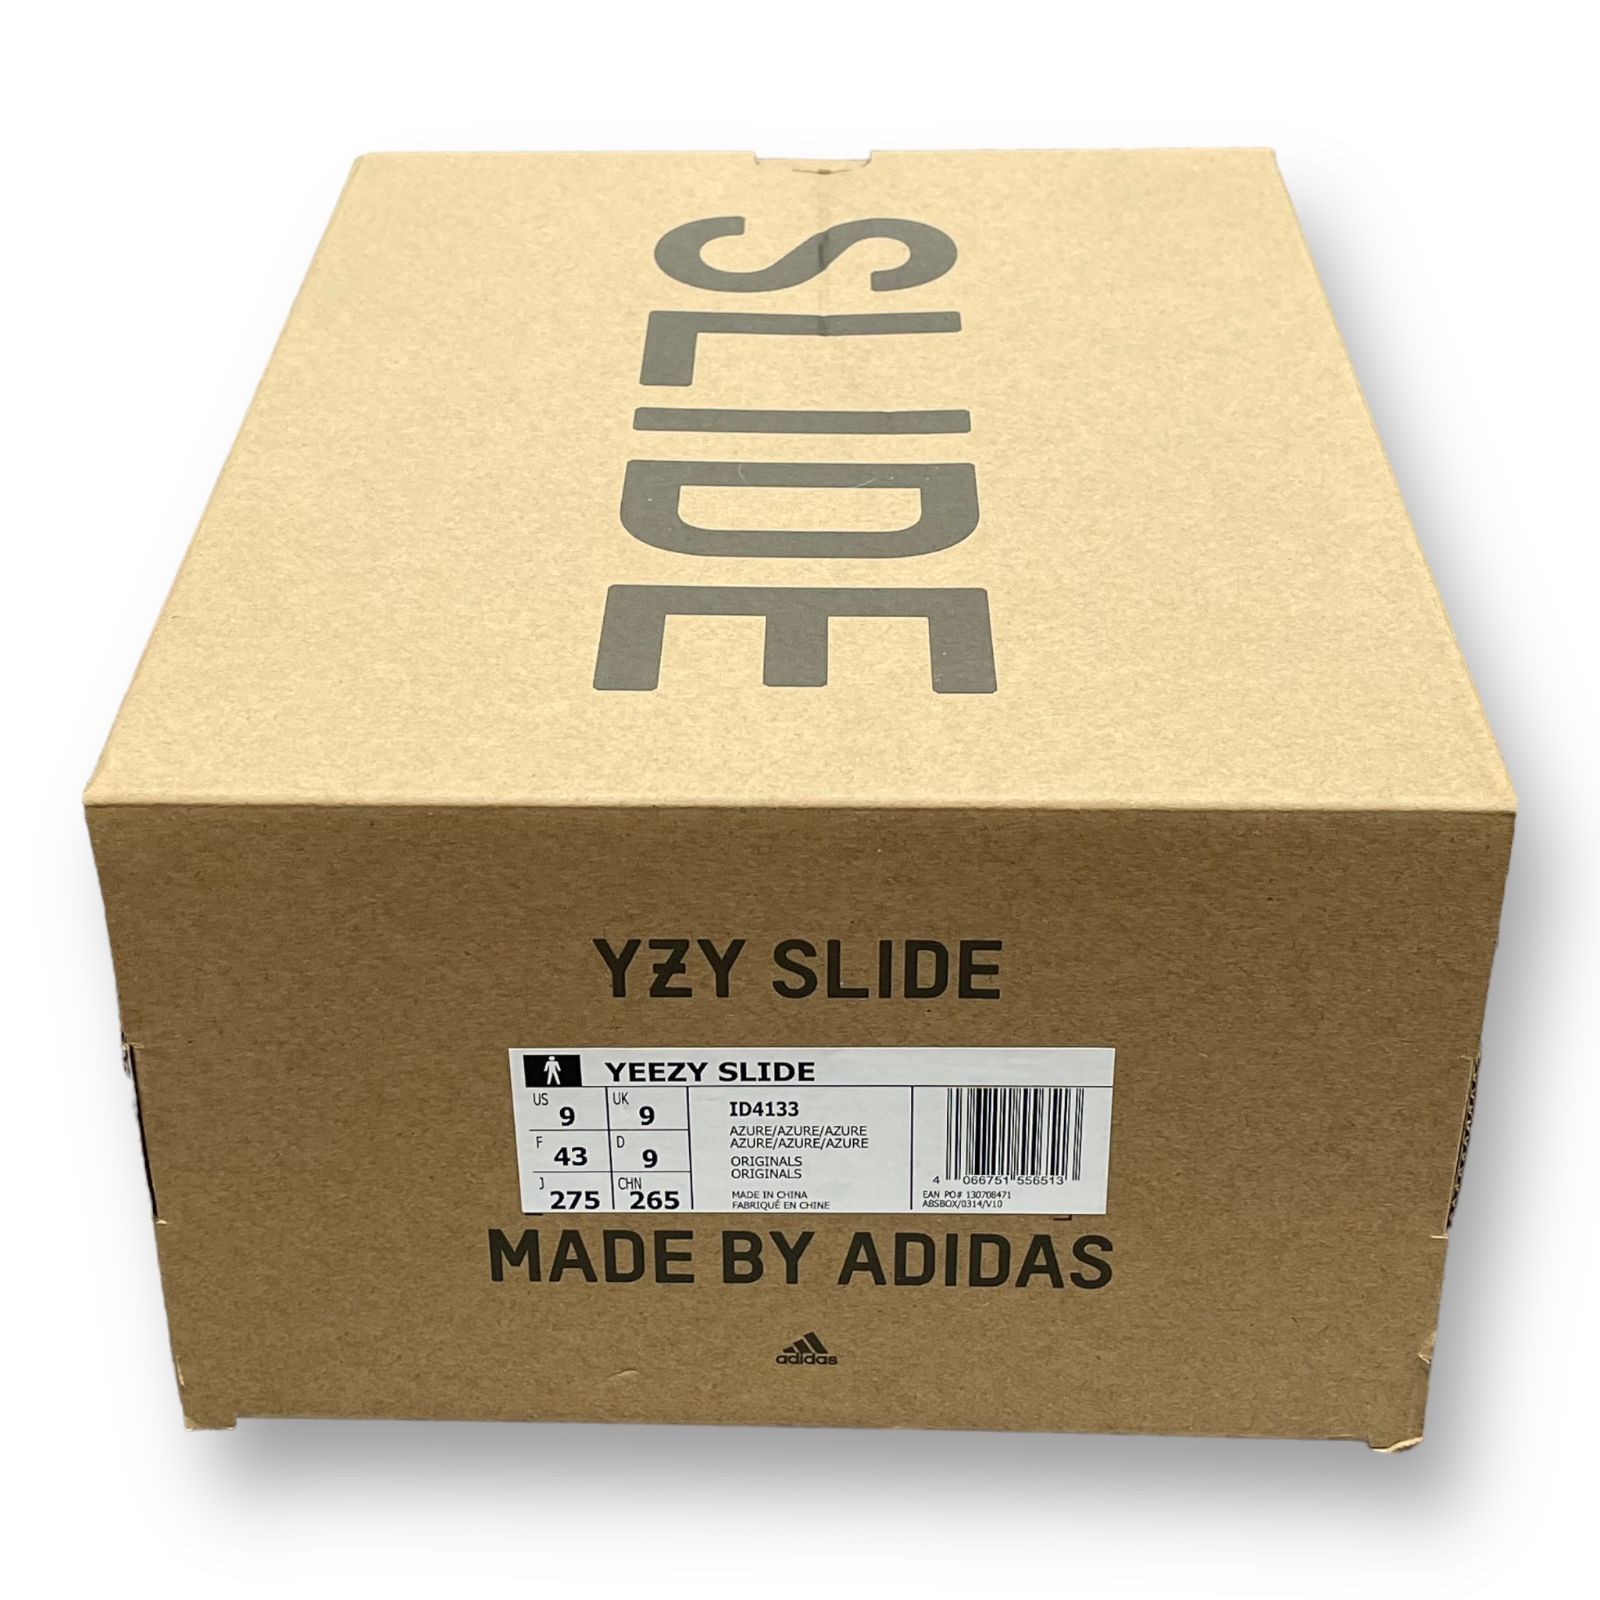 新品　adidas　アディダス　YEEZY SLIDE ID4133 26.5